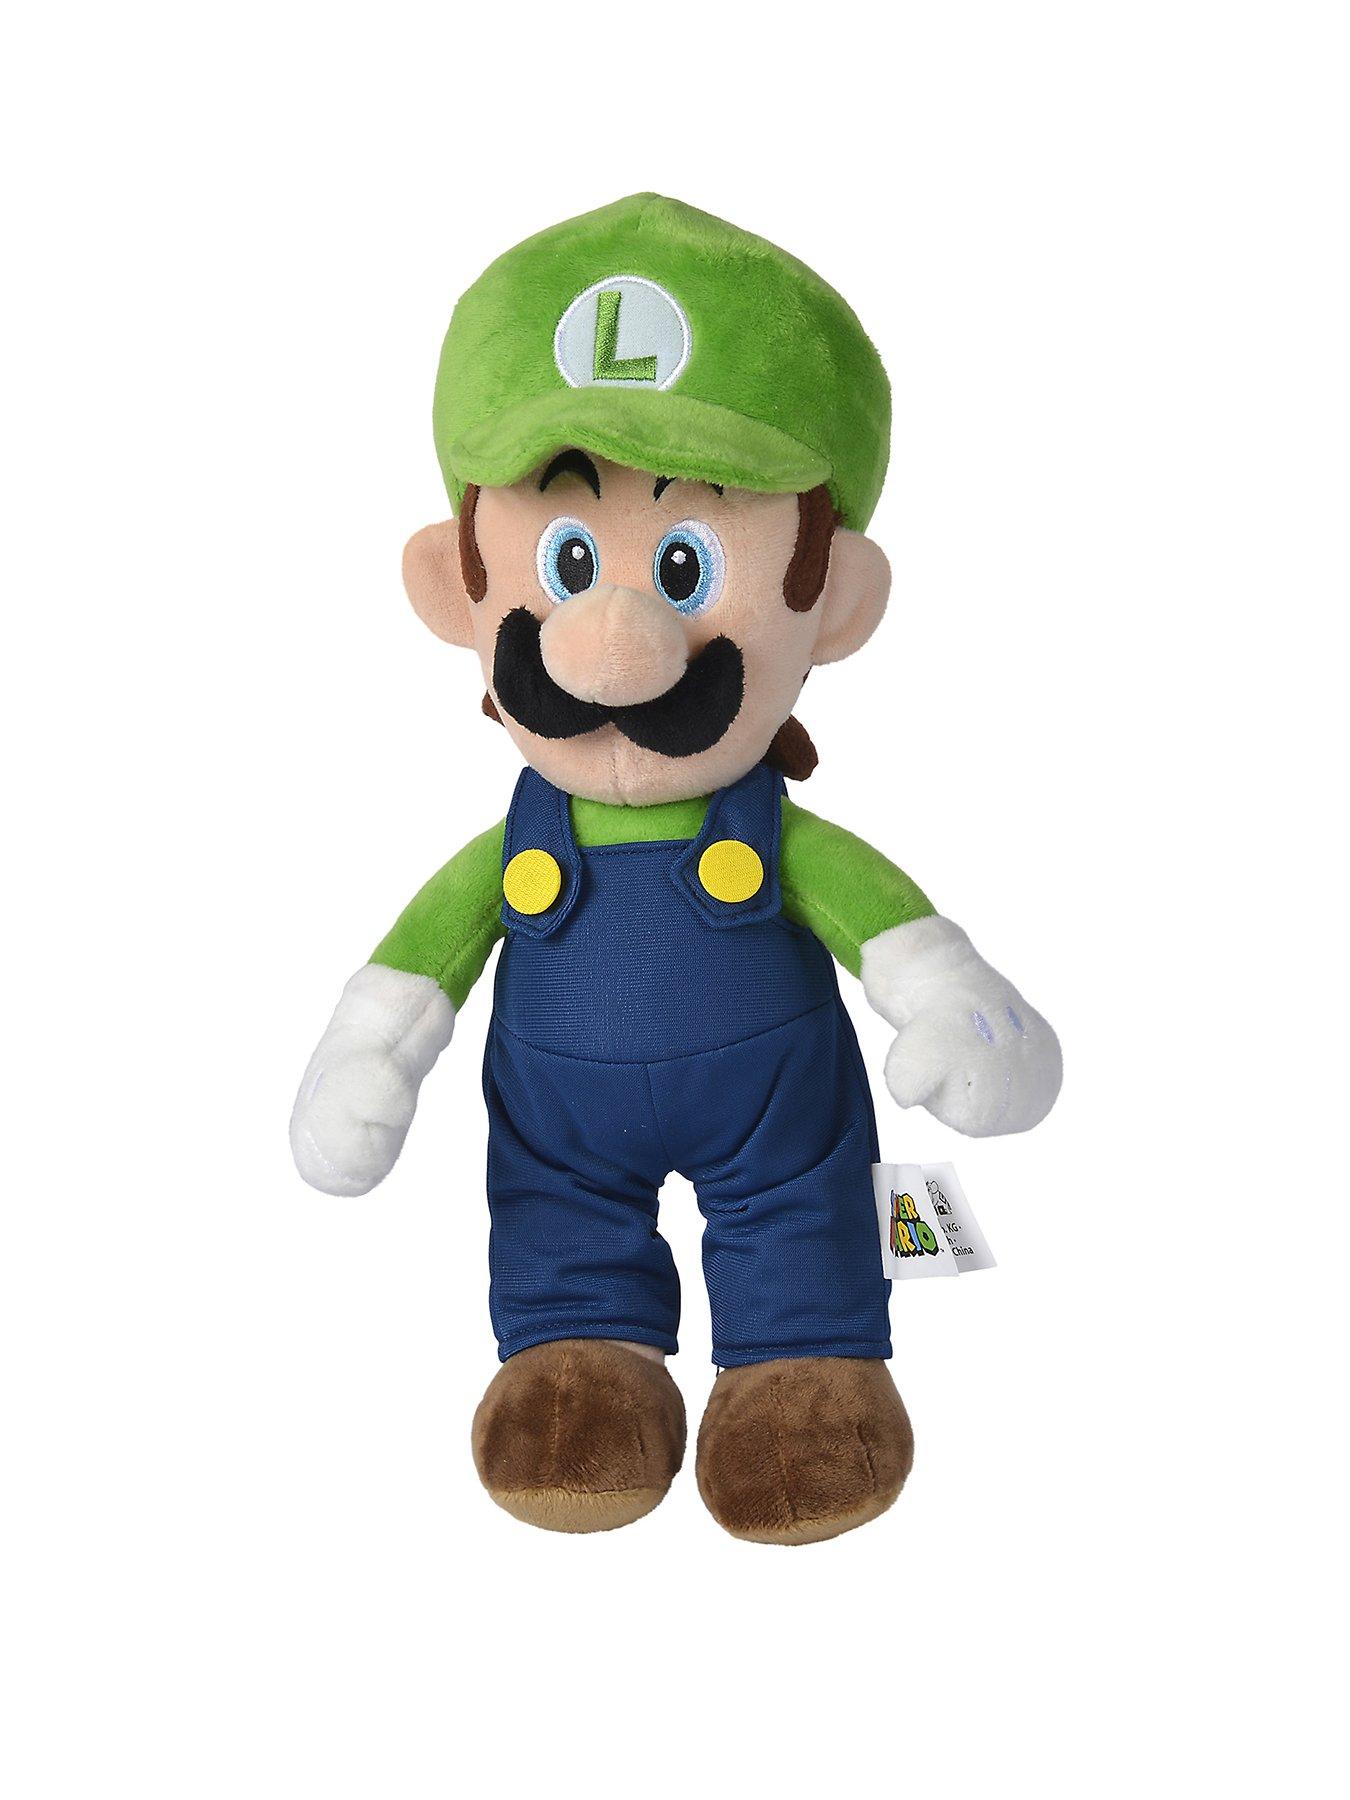 Super Mario/World of Nintendo Mario & Luigi 50cm Jumbo Plush Unboxing! 